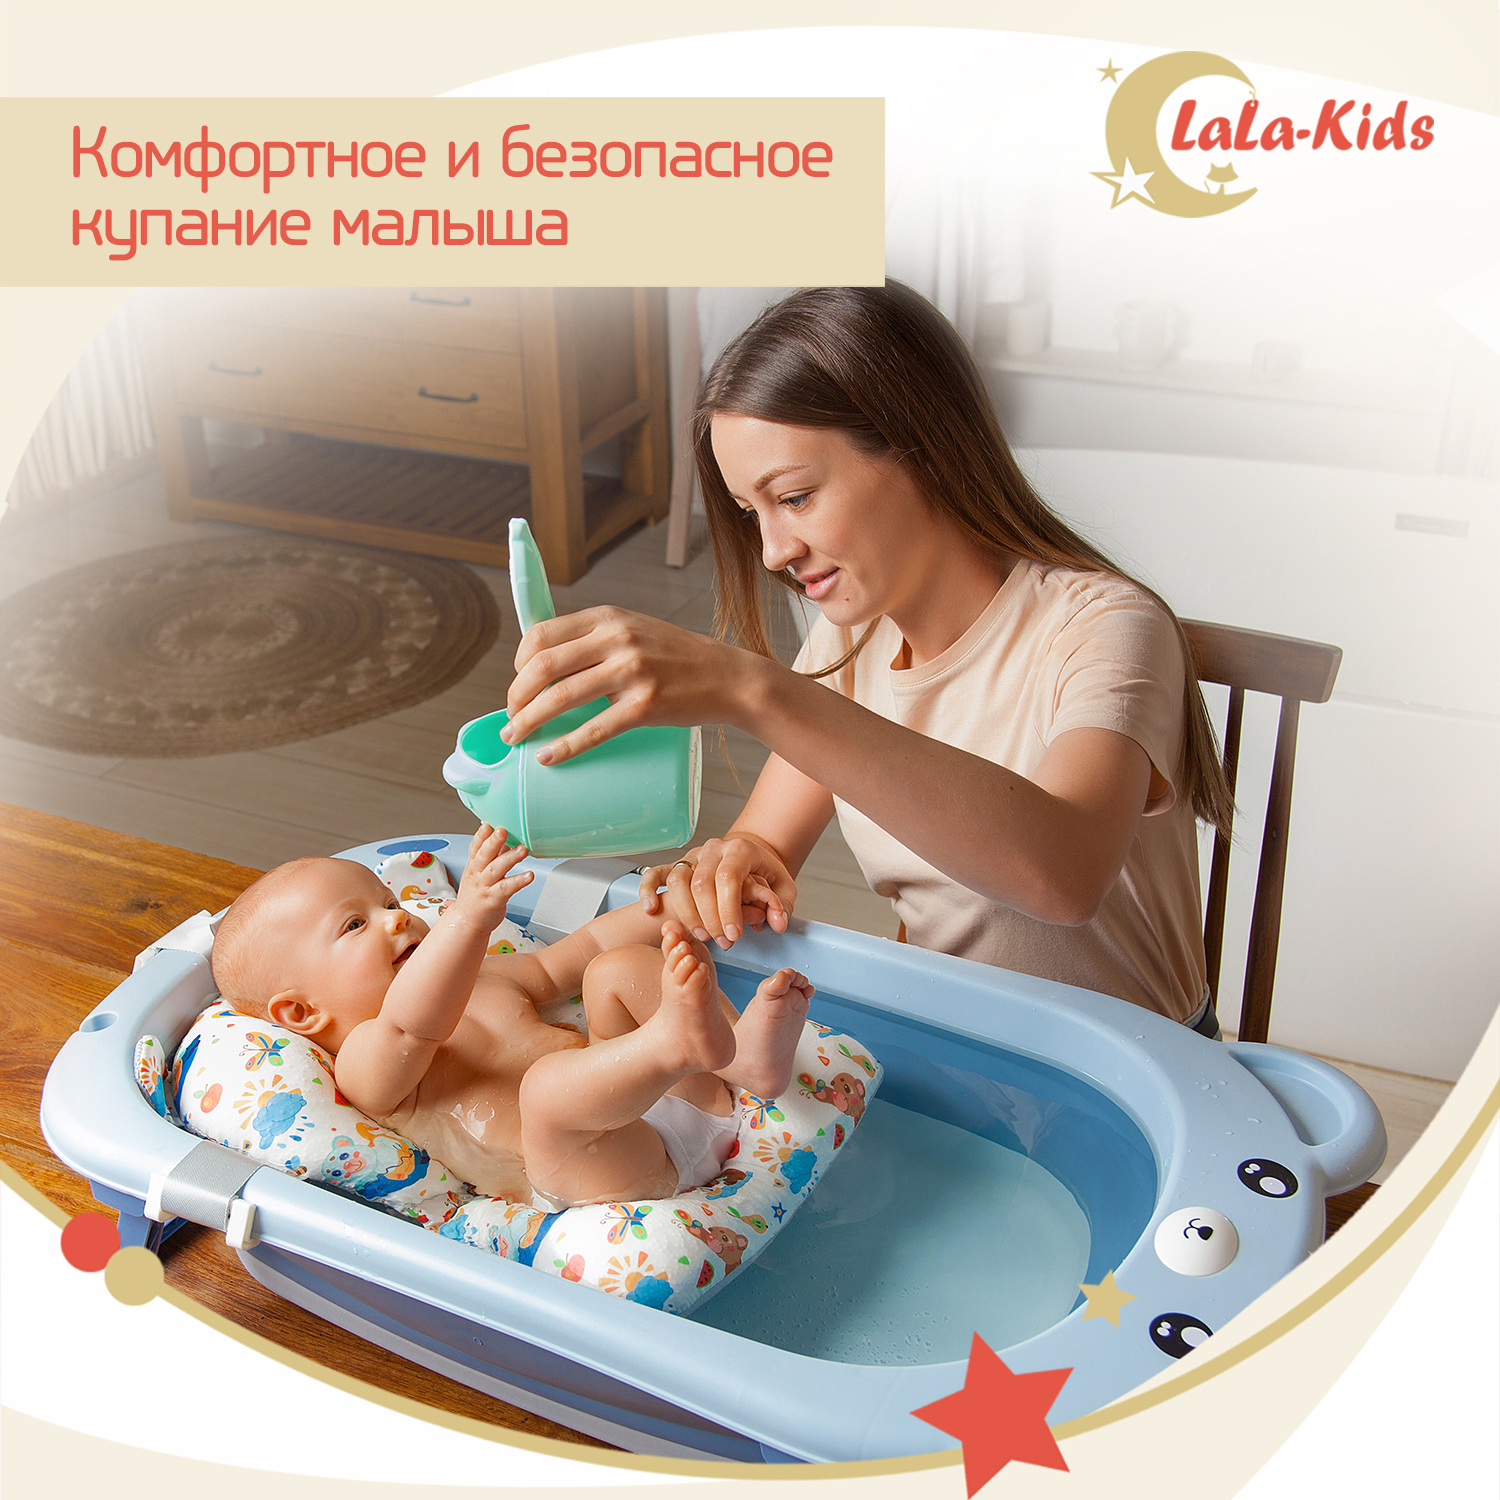 Ванночка для новорожденных LaLa-Kids складная с матрасиком ярко-голубым в комплекте - фото 3